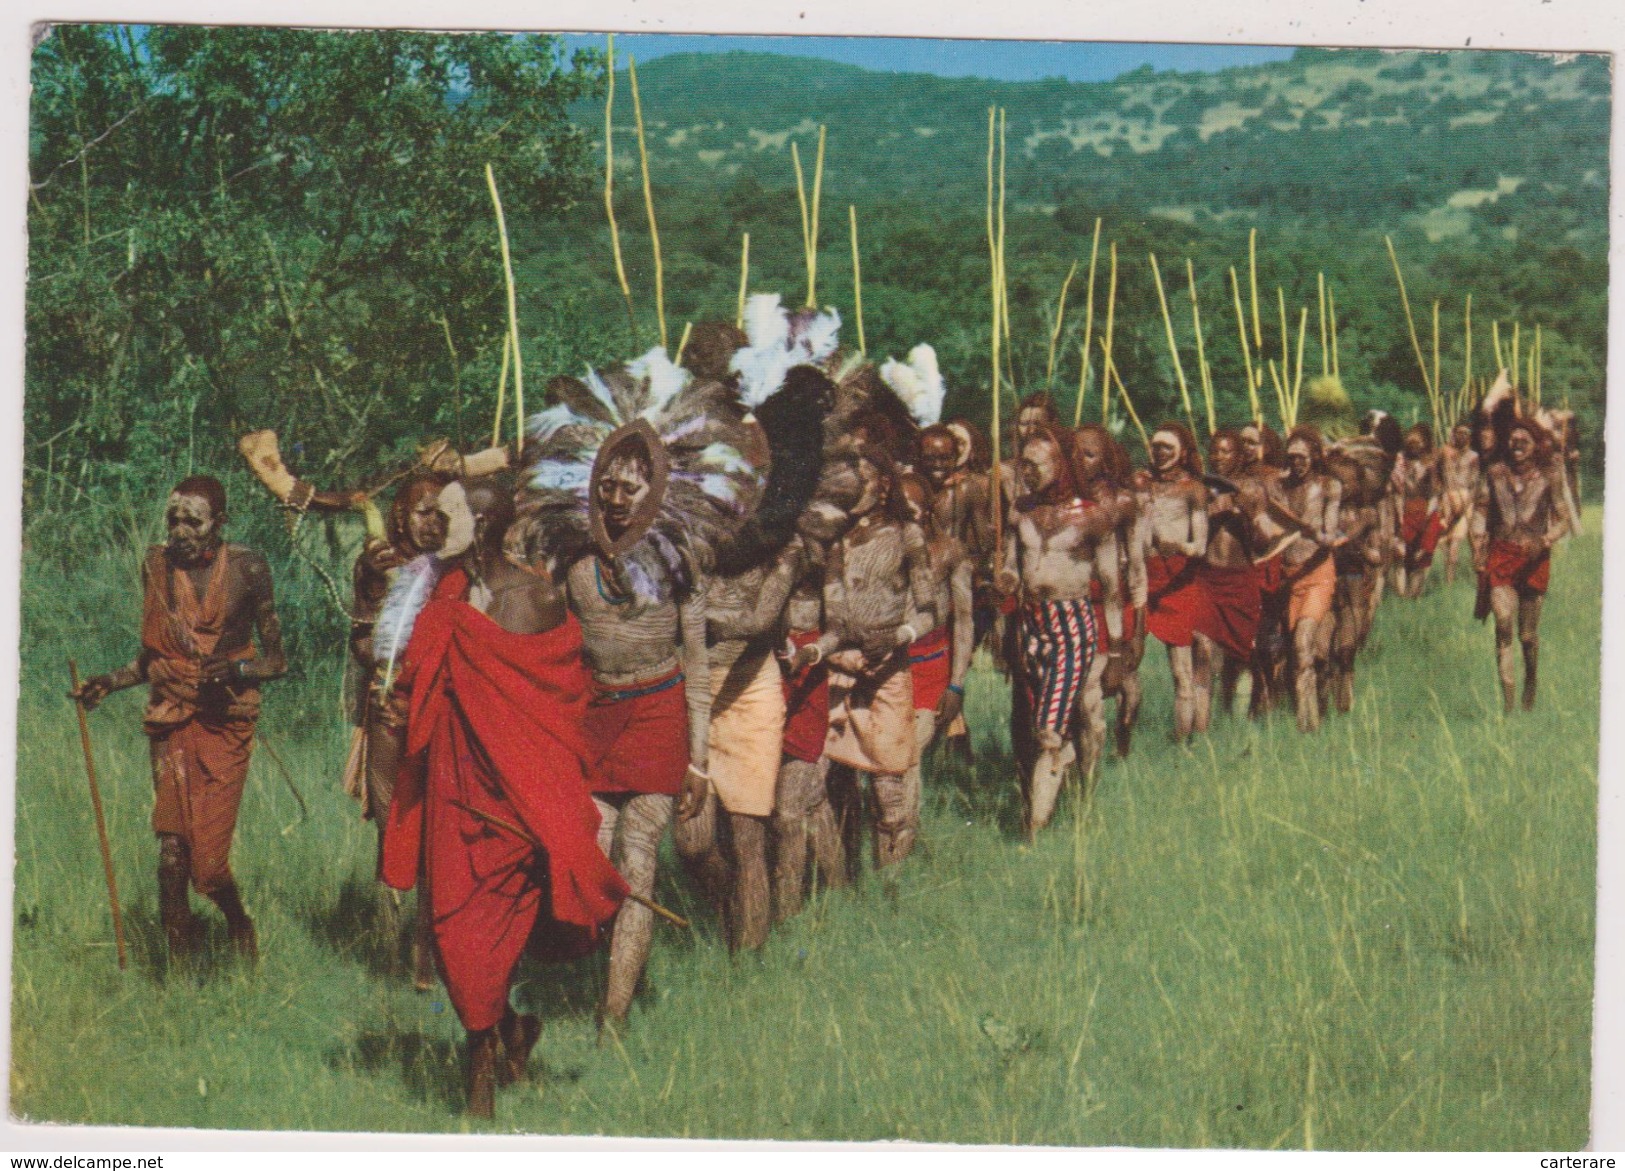 KENYA,afrique Est,prés Du Soudan,ethiopie,ouganda,tanzanie,TRIBU MASAI,DANCE DES SORCIERS - Kenia